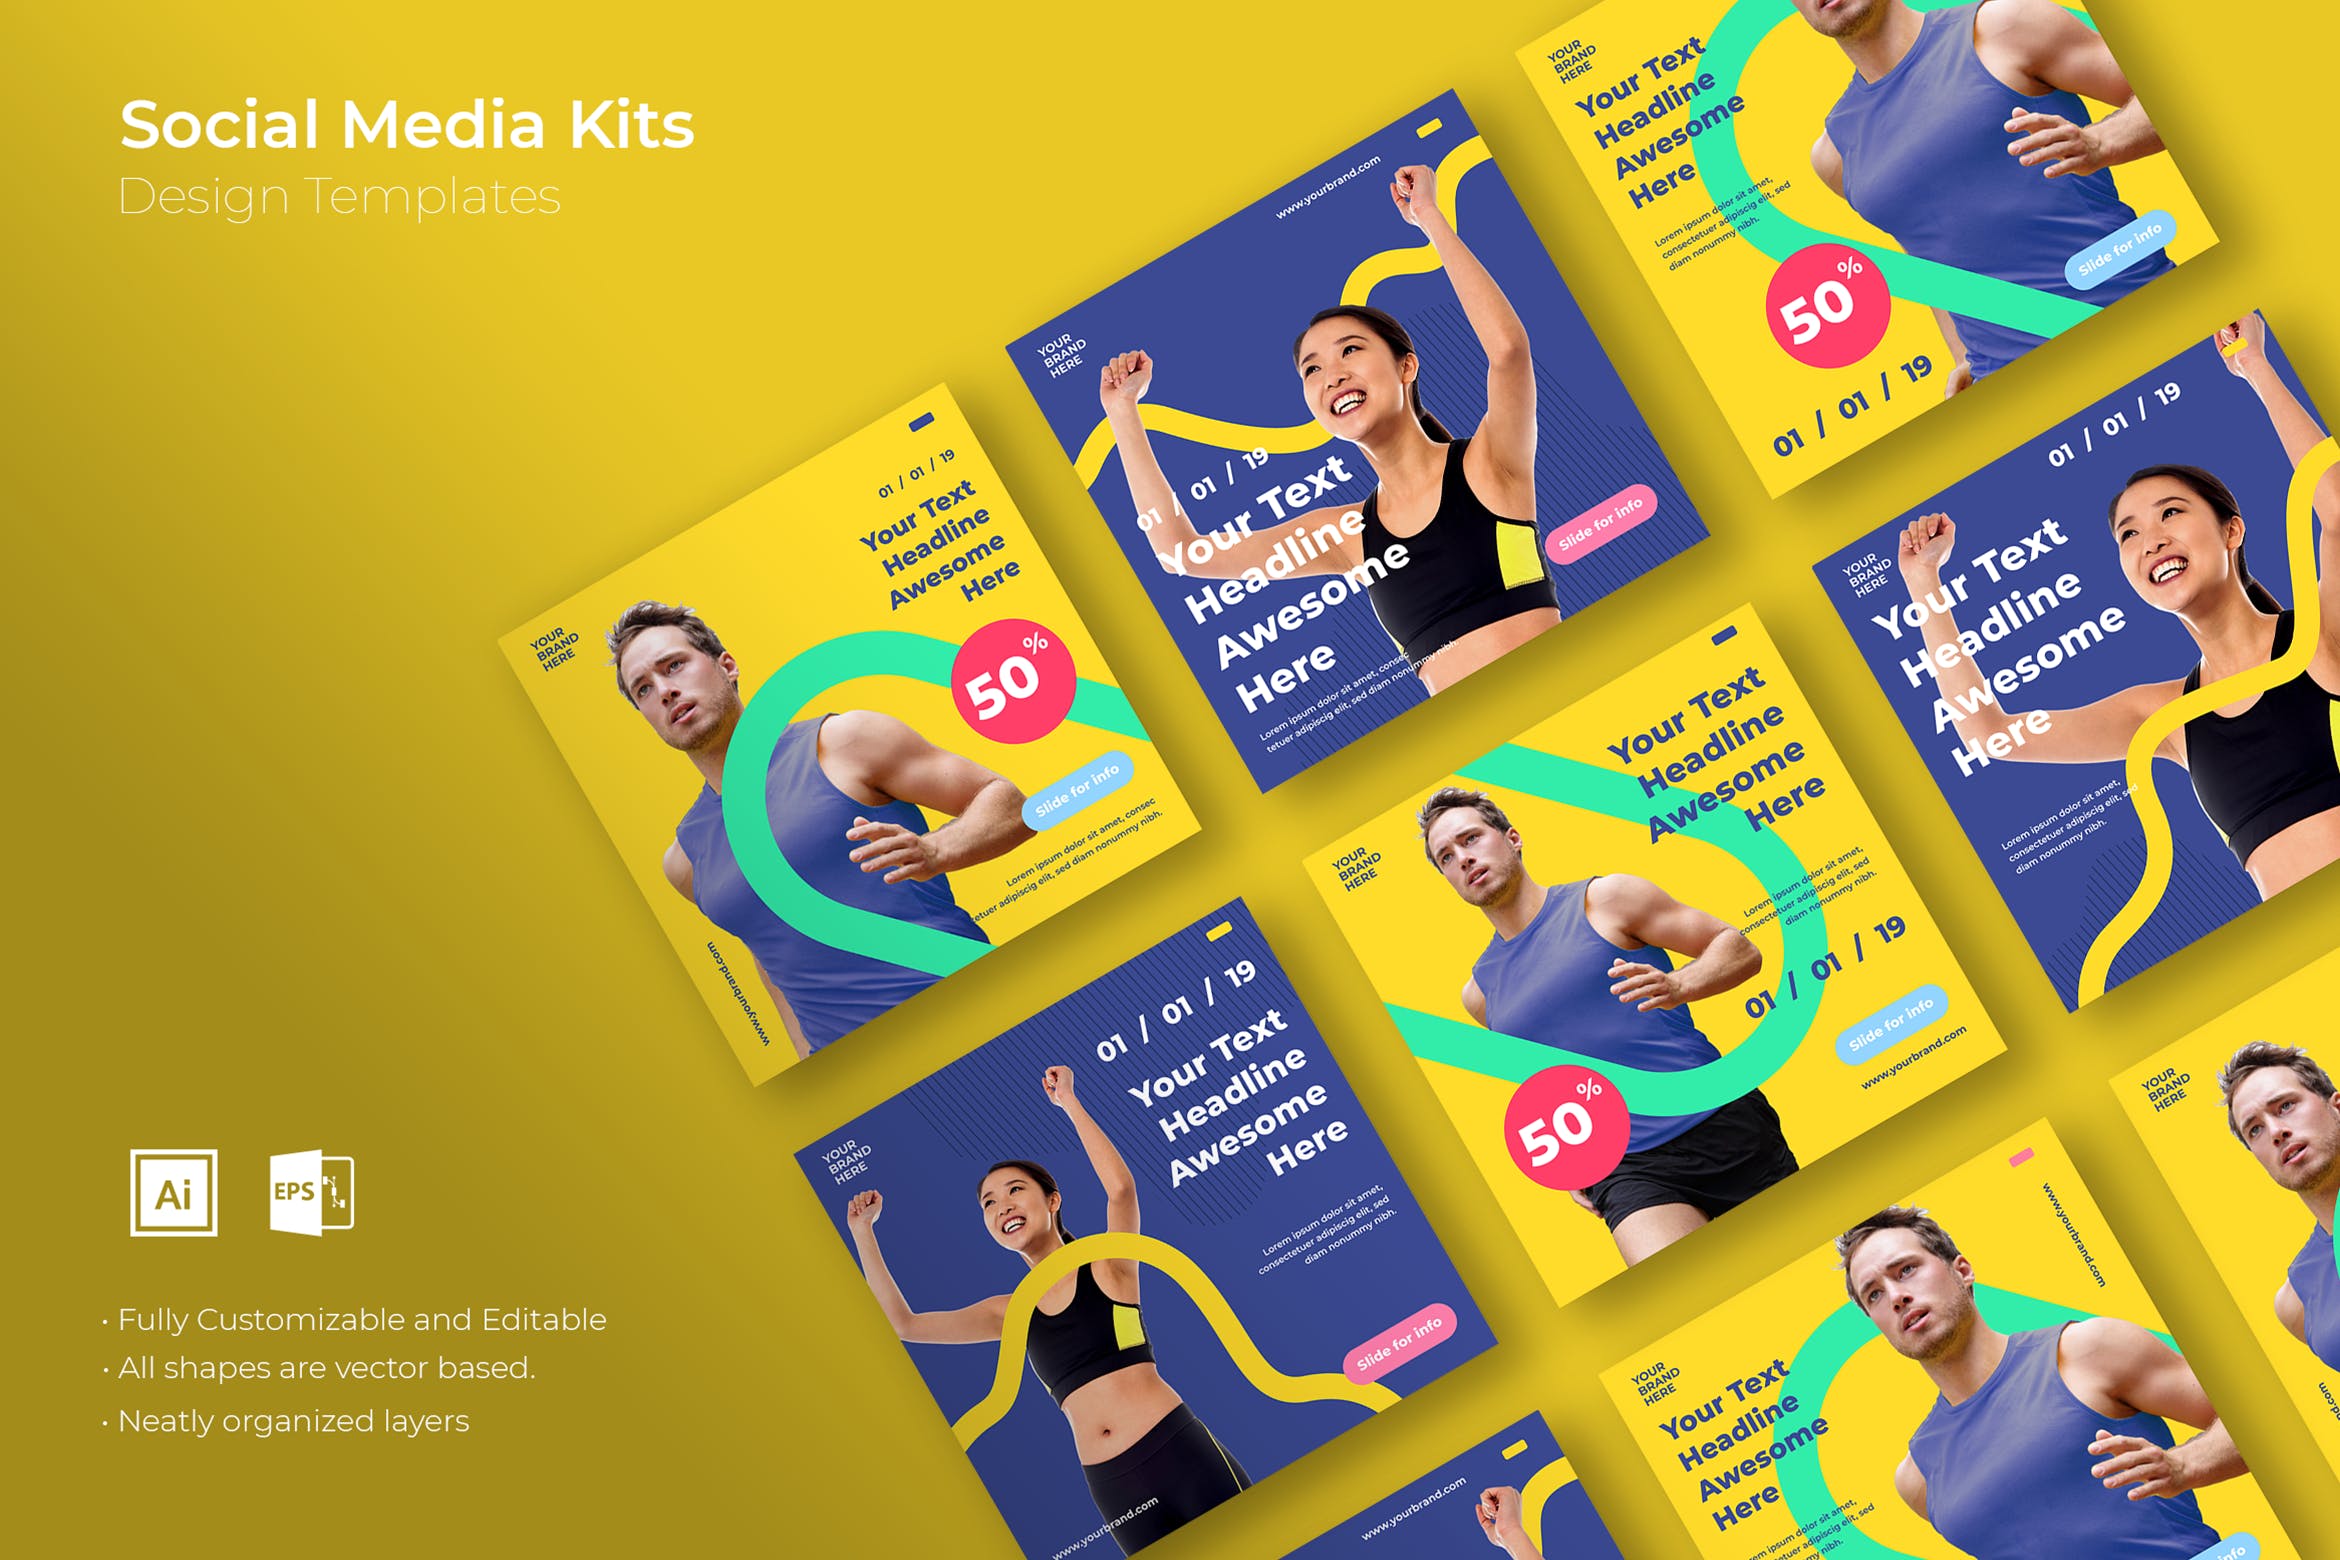 健身体育品牌社交媒体自媒体营销广告设计模板素材库精选v26 SRTP – Social Media Kit.26插图